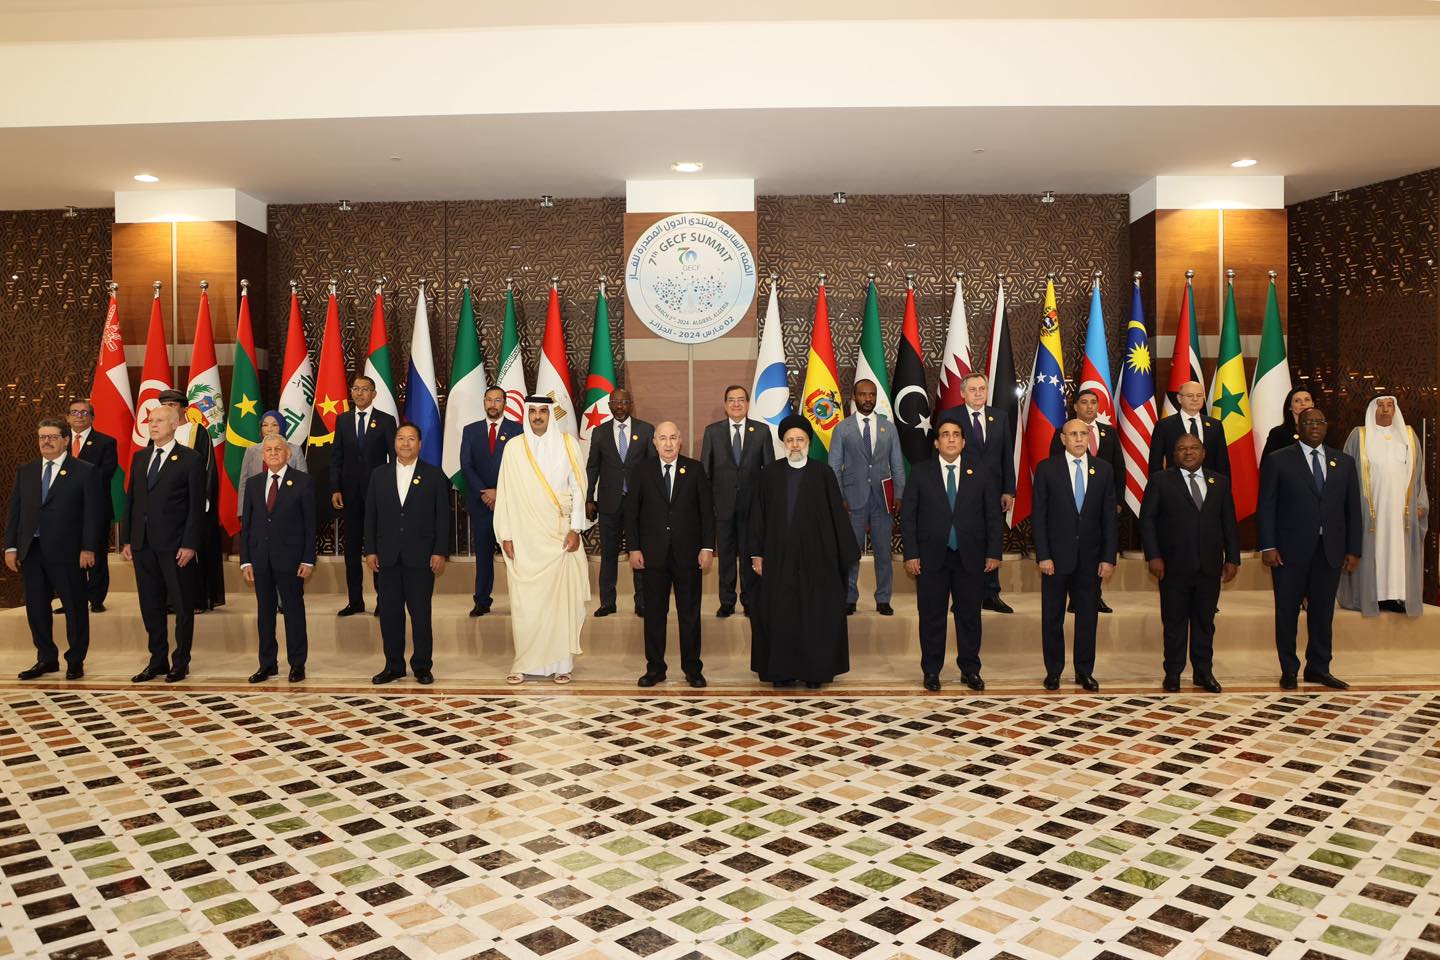 صورة جماعية للقادة المشاركين في قمة منتدى الدول المصدرة للغاز في الجزائر